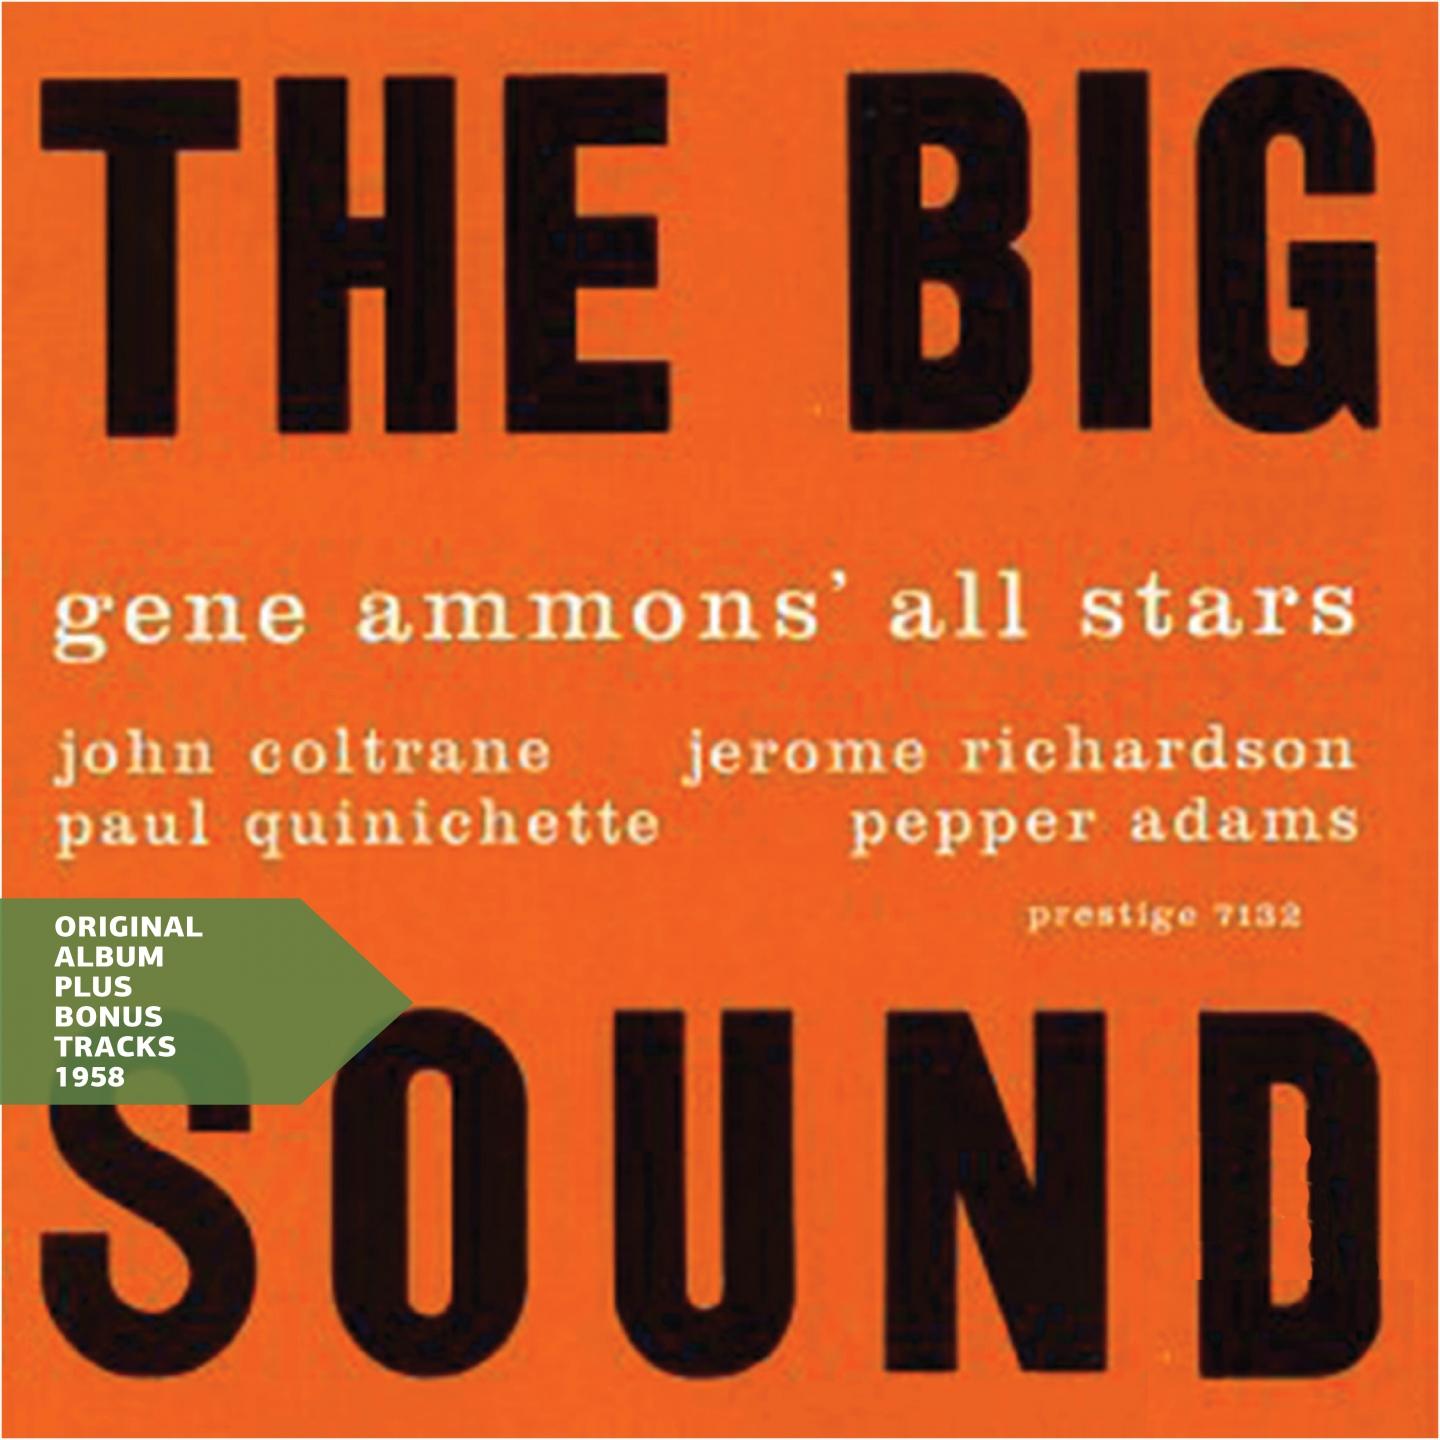 The Big Sound (Original Album Plus Bonus Tracks 1958)